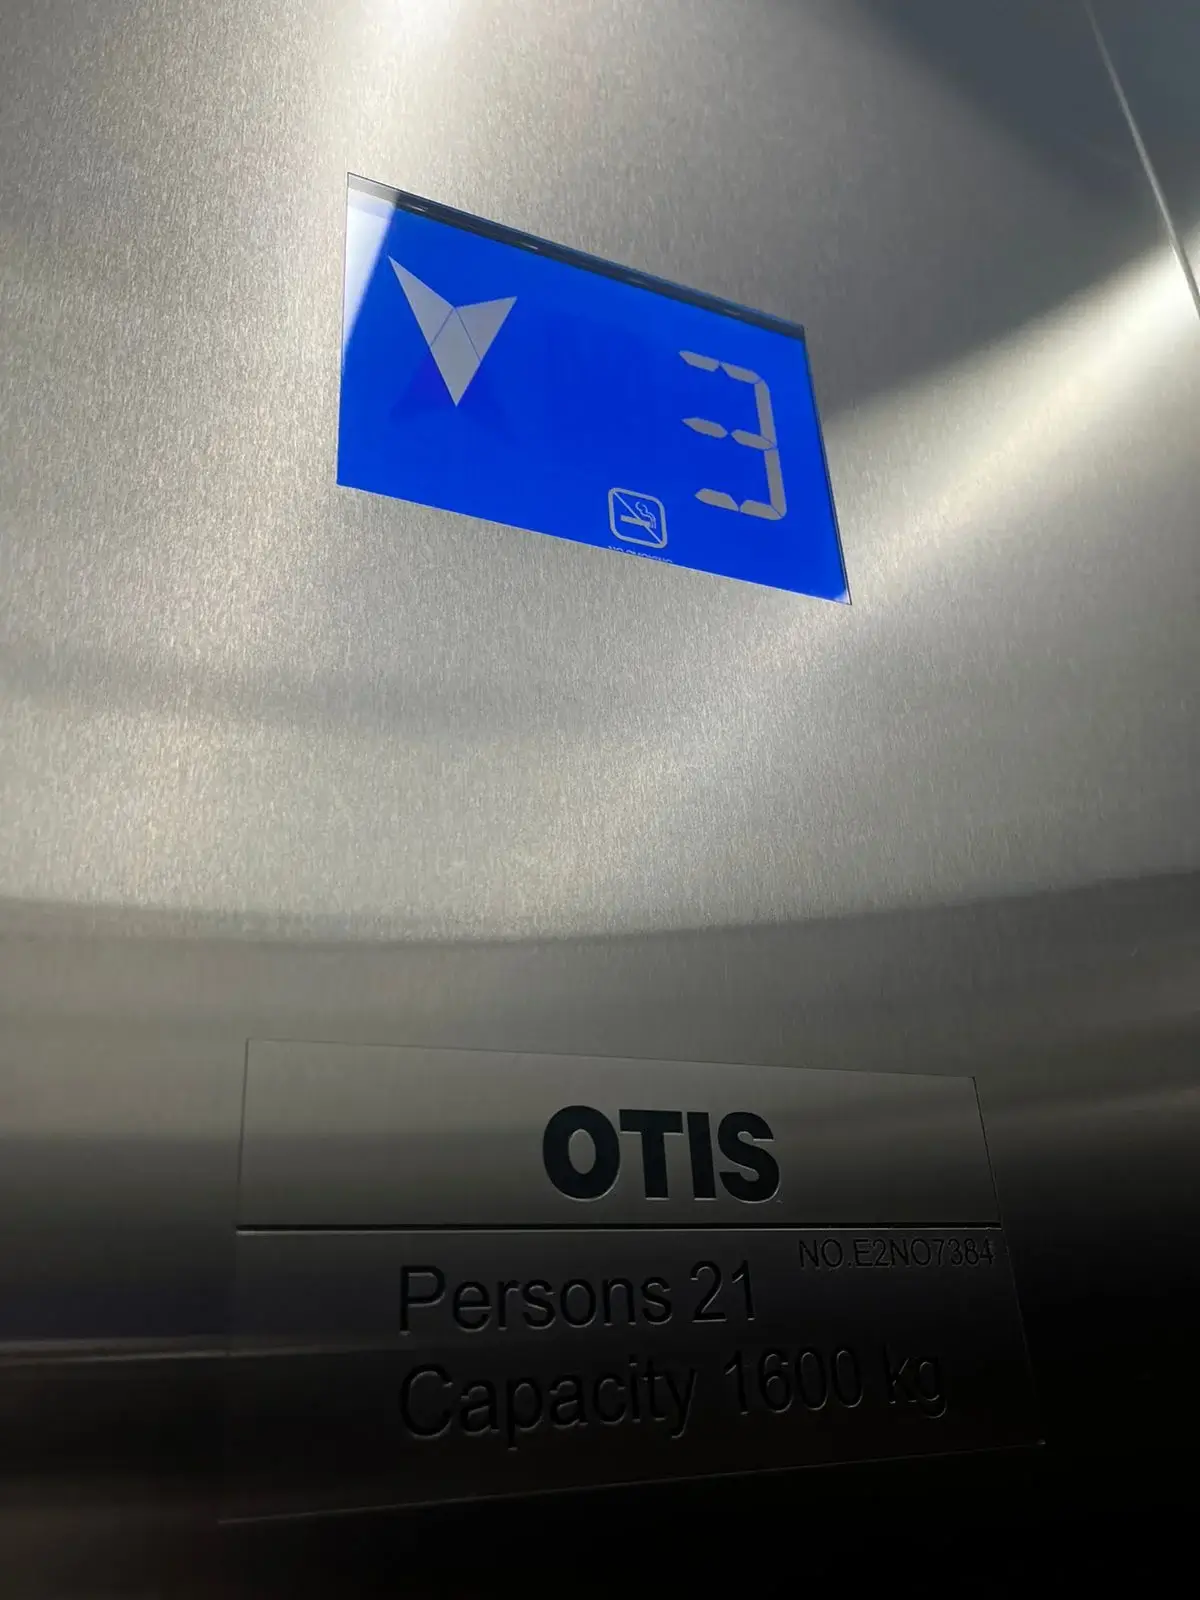 РСУ «Противовес» завершило монтаж лифта OTIS в медицинском учреждении в Западном административном округе города Москвы